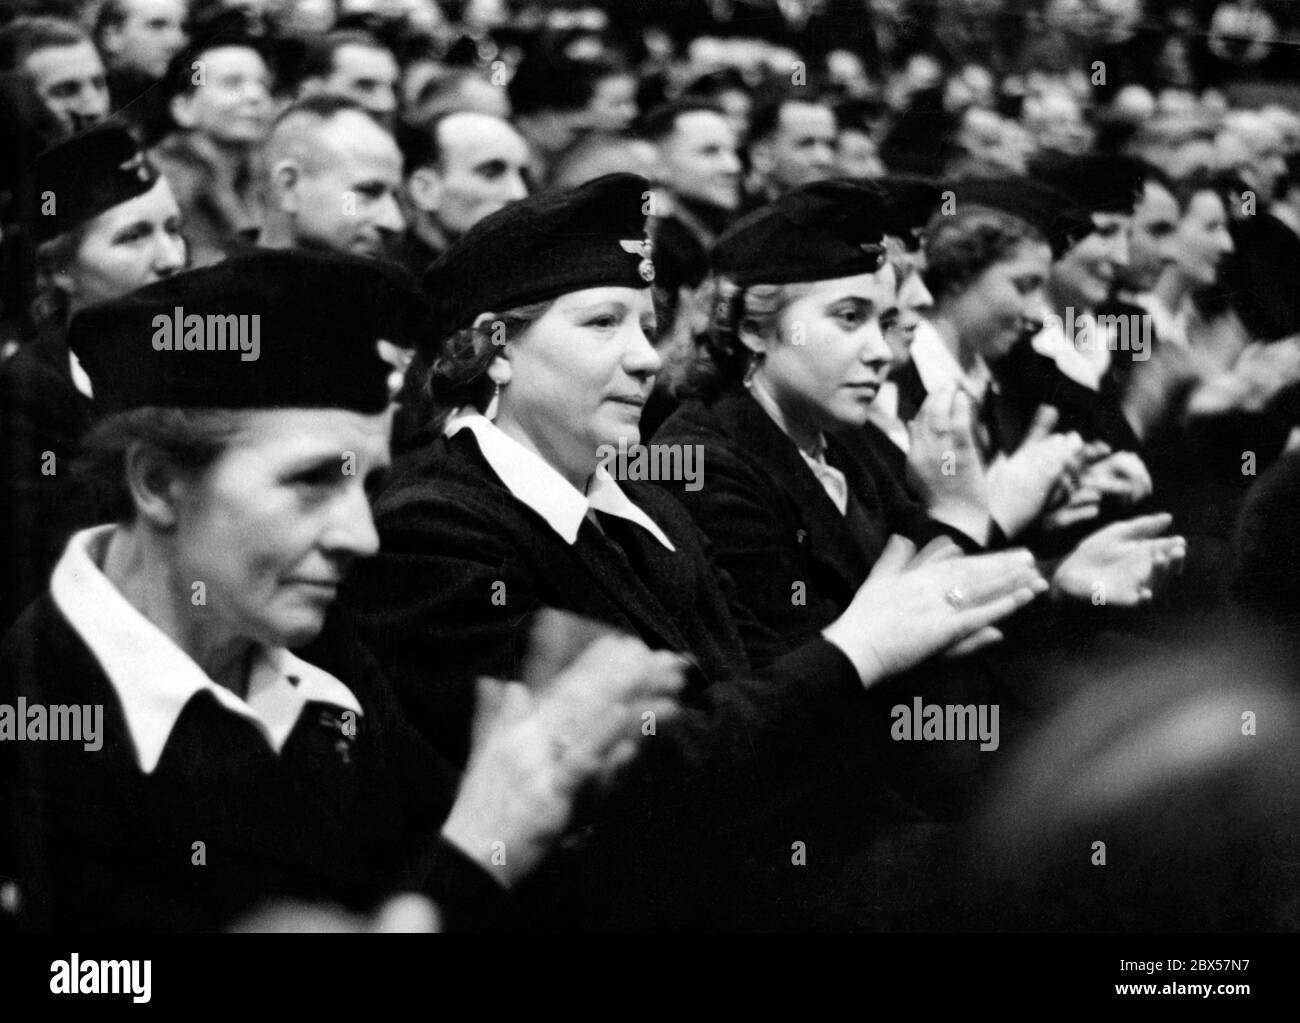 Nach der demagogischen Rede des Reichspropagandaministers Joseph Goebbels applaudiert das Publikum. Dieses Bild zeigt die Wehrmachtshelfer. Foto: Schwahn Stockfoto